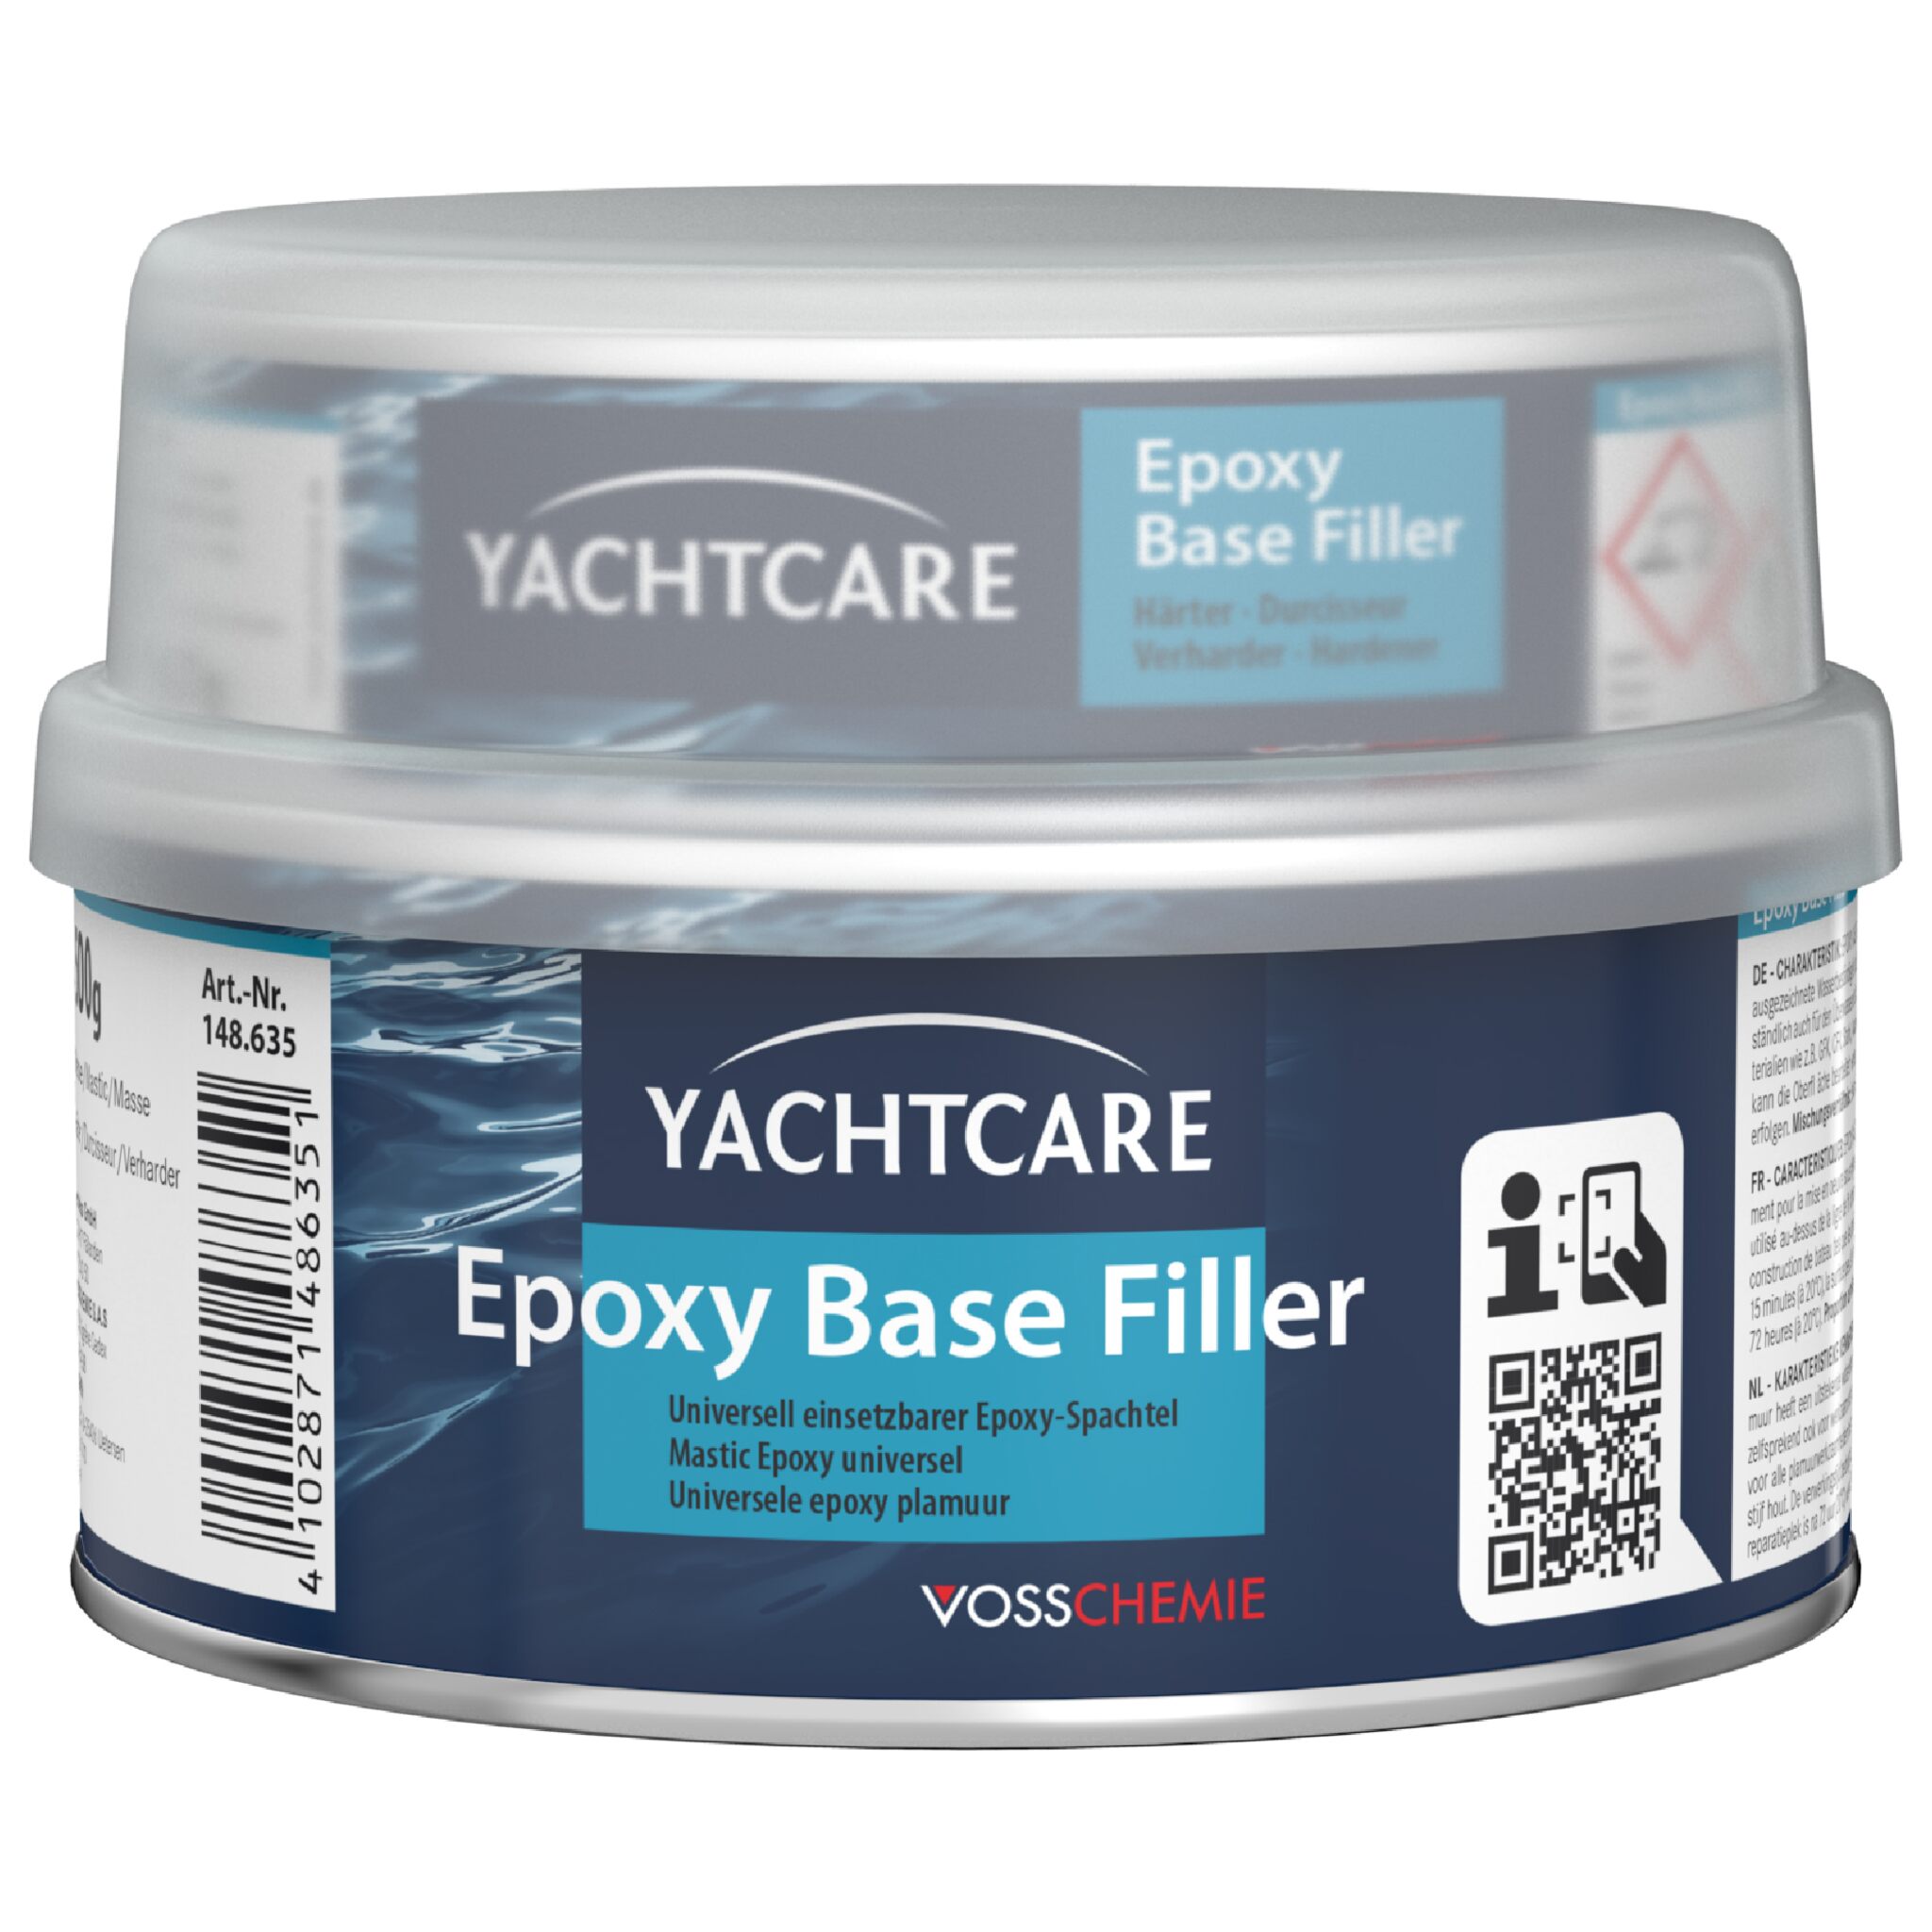 Yachtcare Epoxy Base Filler